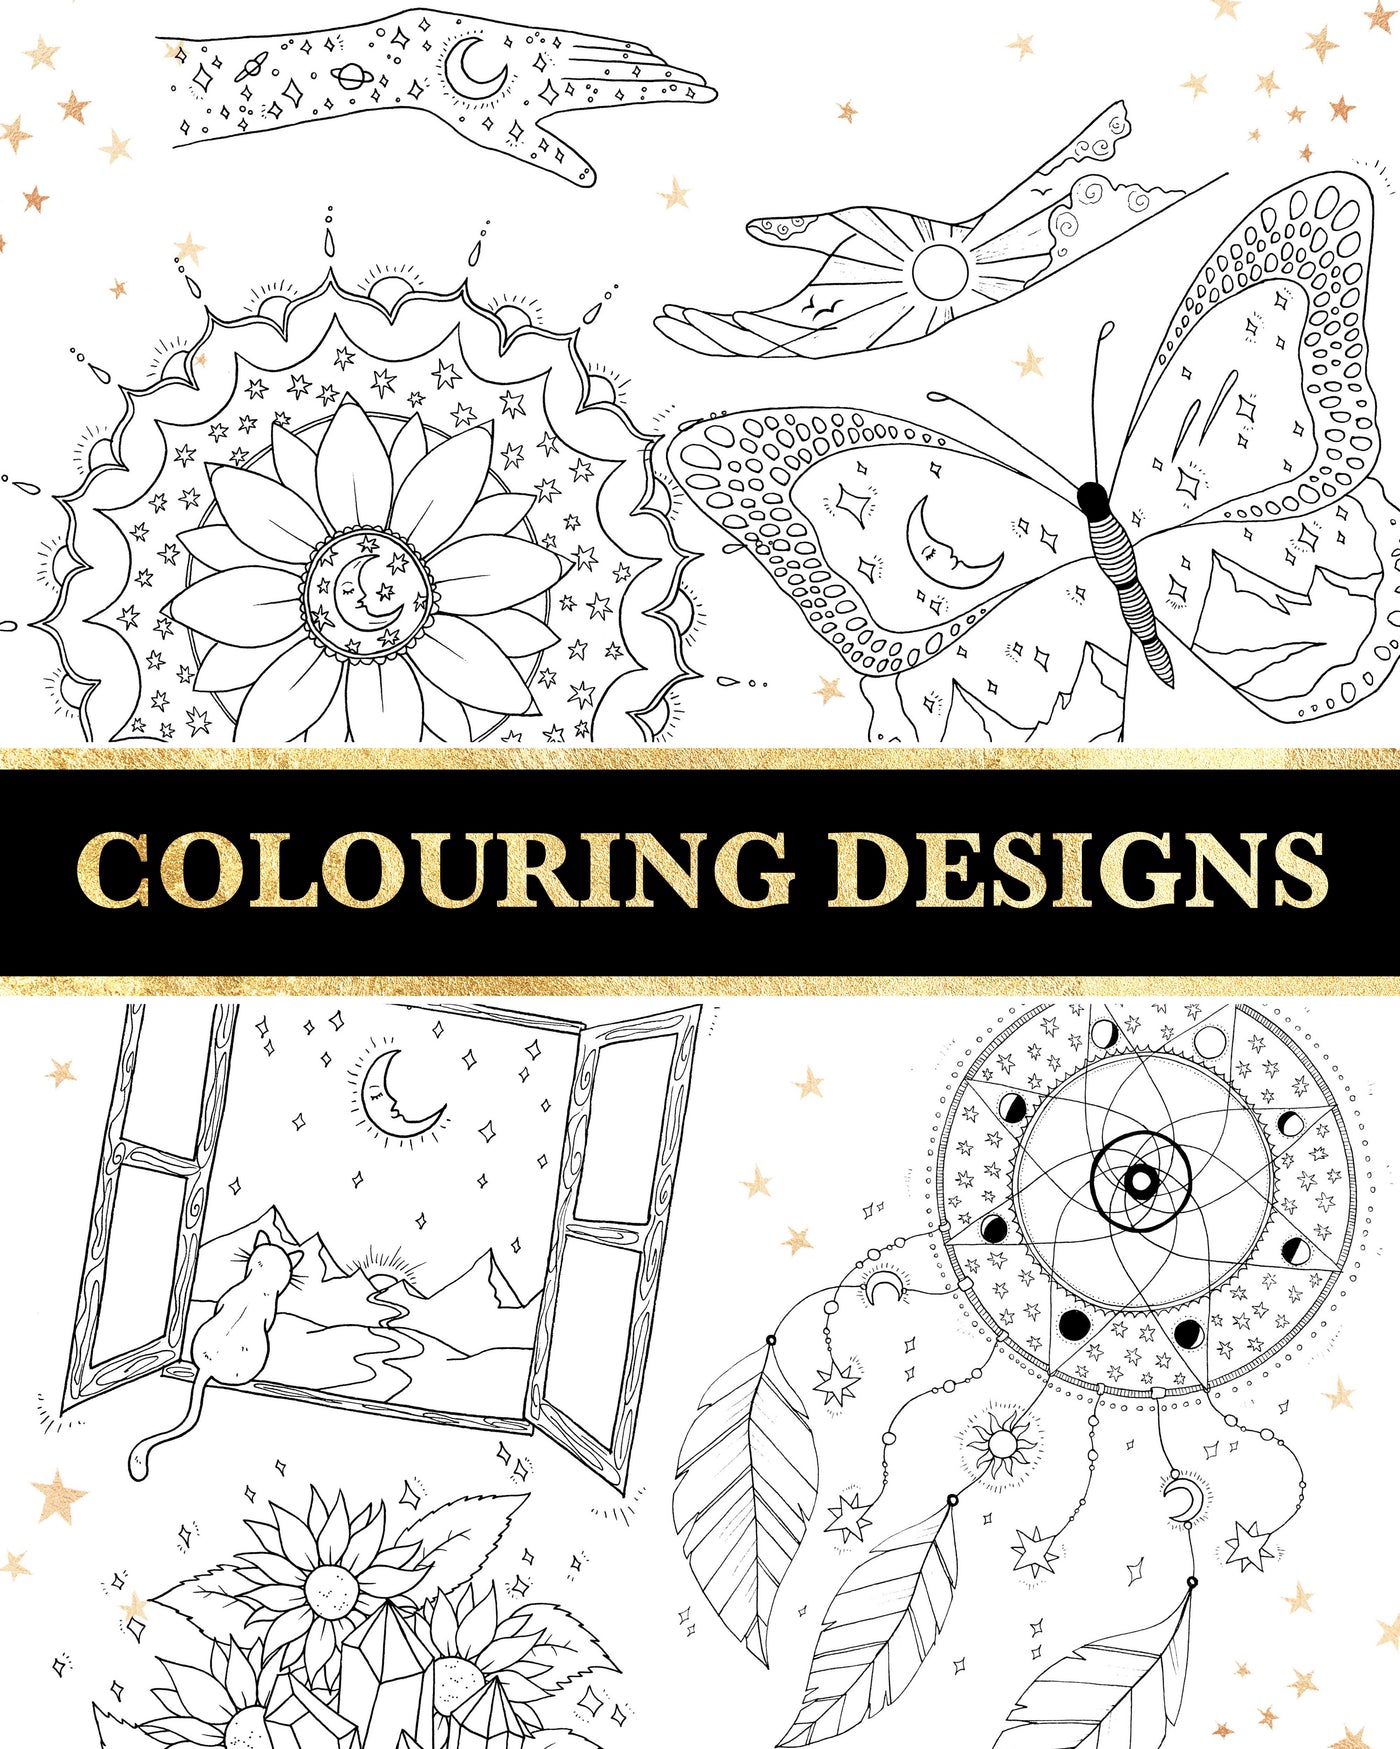 7 Colour in Designs